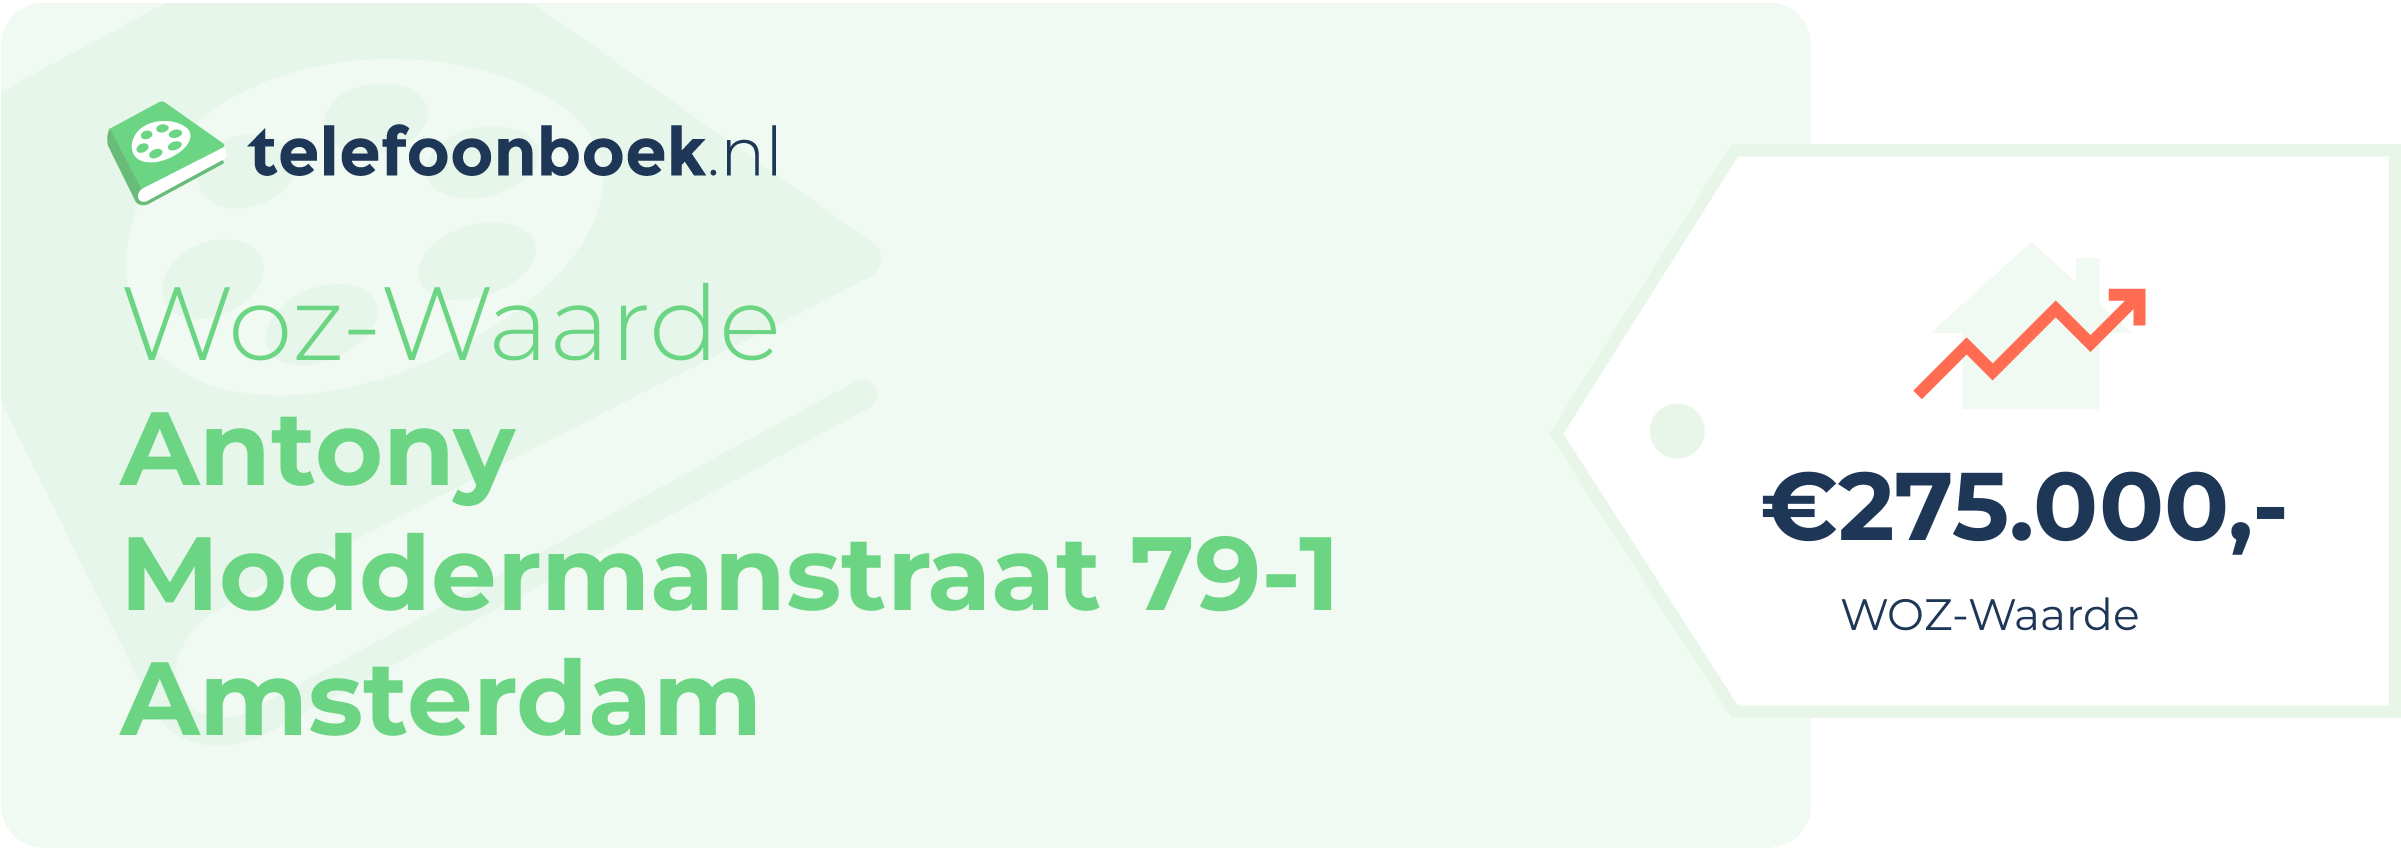 WOZ-waarde Antony Moddermanstraat 79-1 Amsterdam